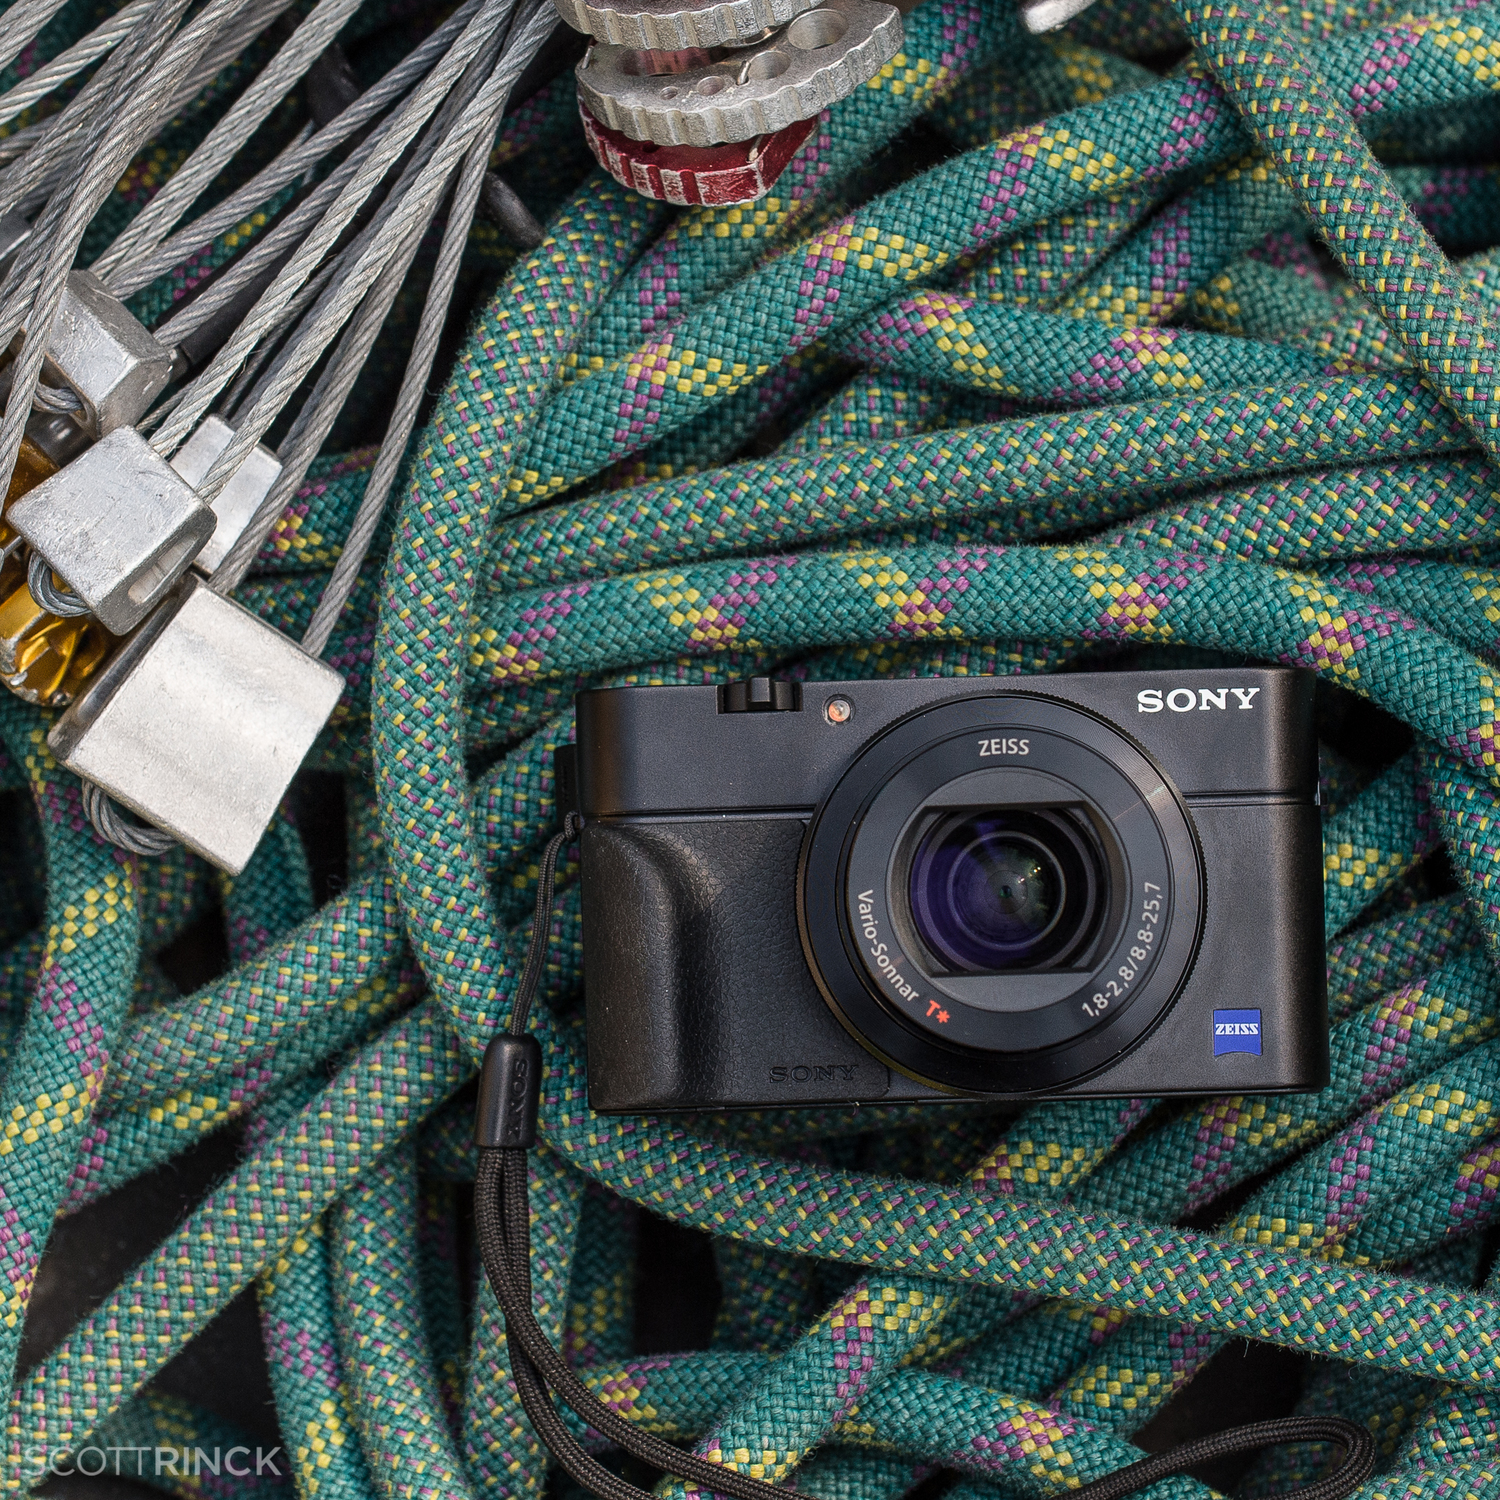 Omkleden schieten Toepassing Is the Sony RX100 III the Best 'Pocket' Camera Ever? — Scott Rinckenberger  Photography